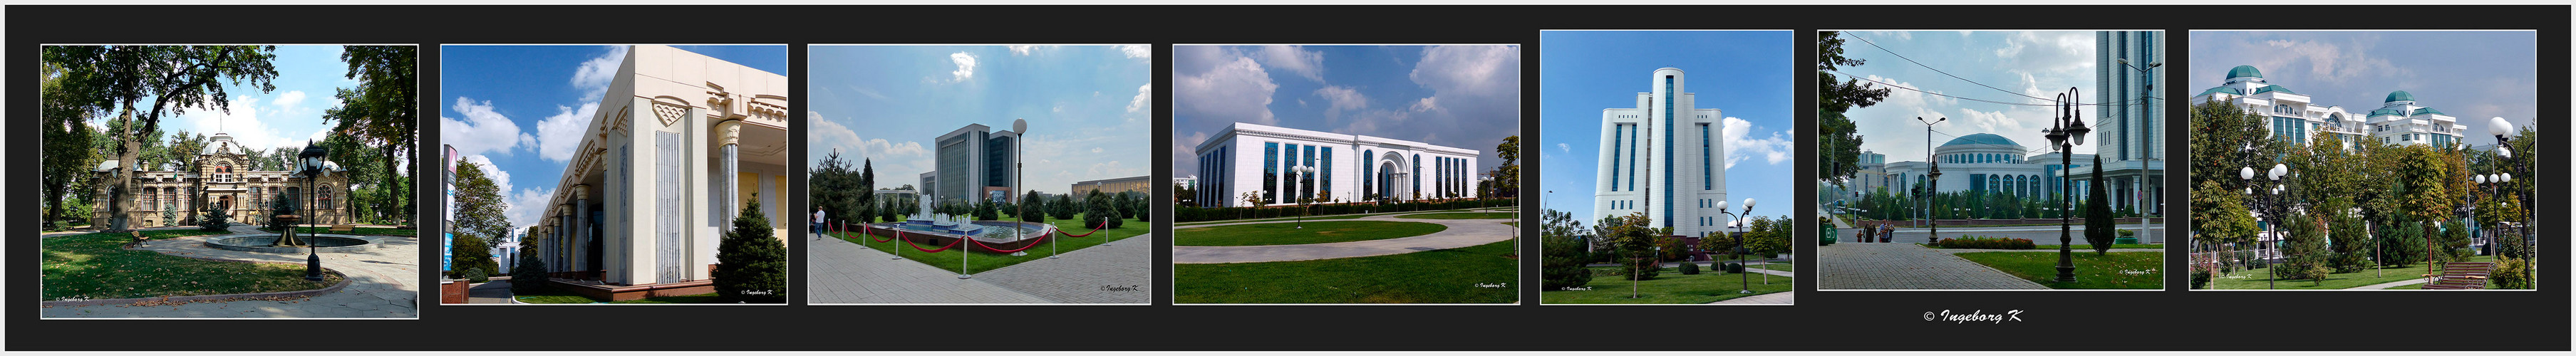 Taschkent - Bummel durch die moderne Stadt